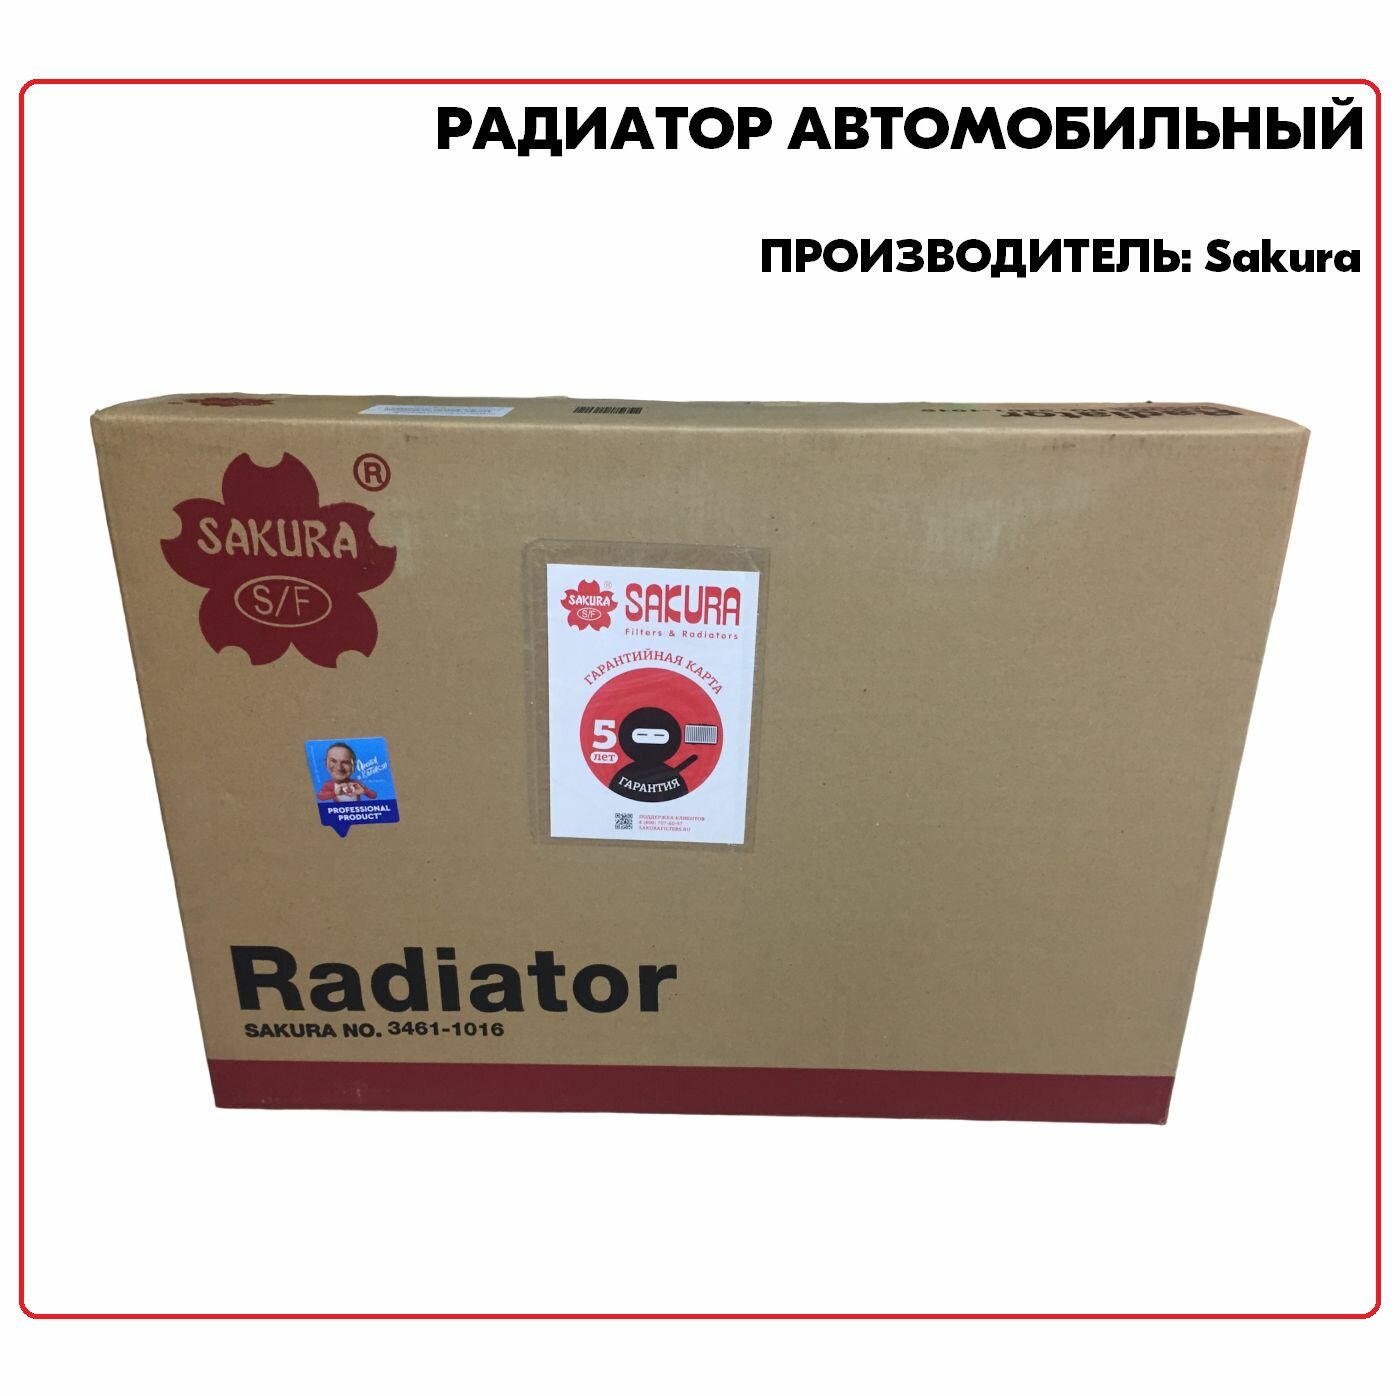 Радиатор 33411016, производитель Sakura